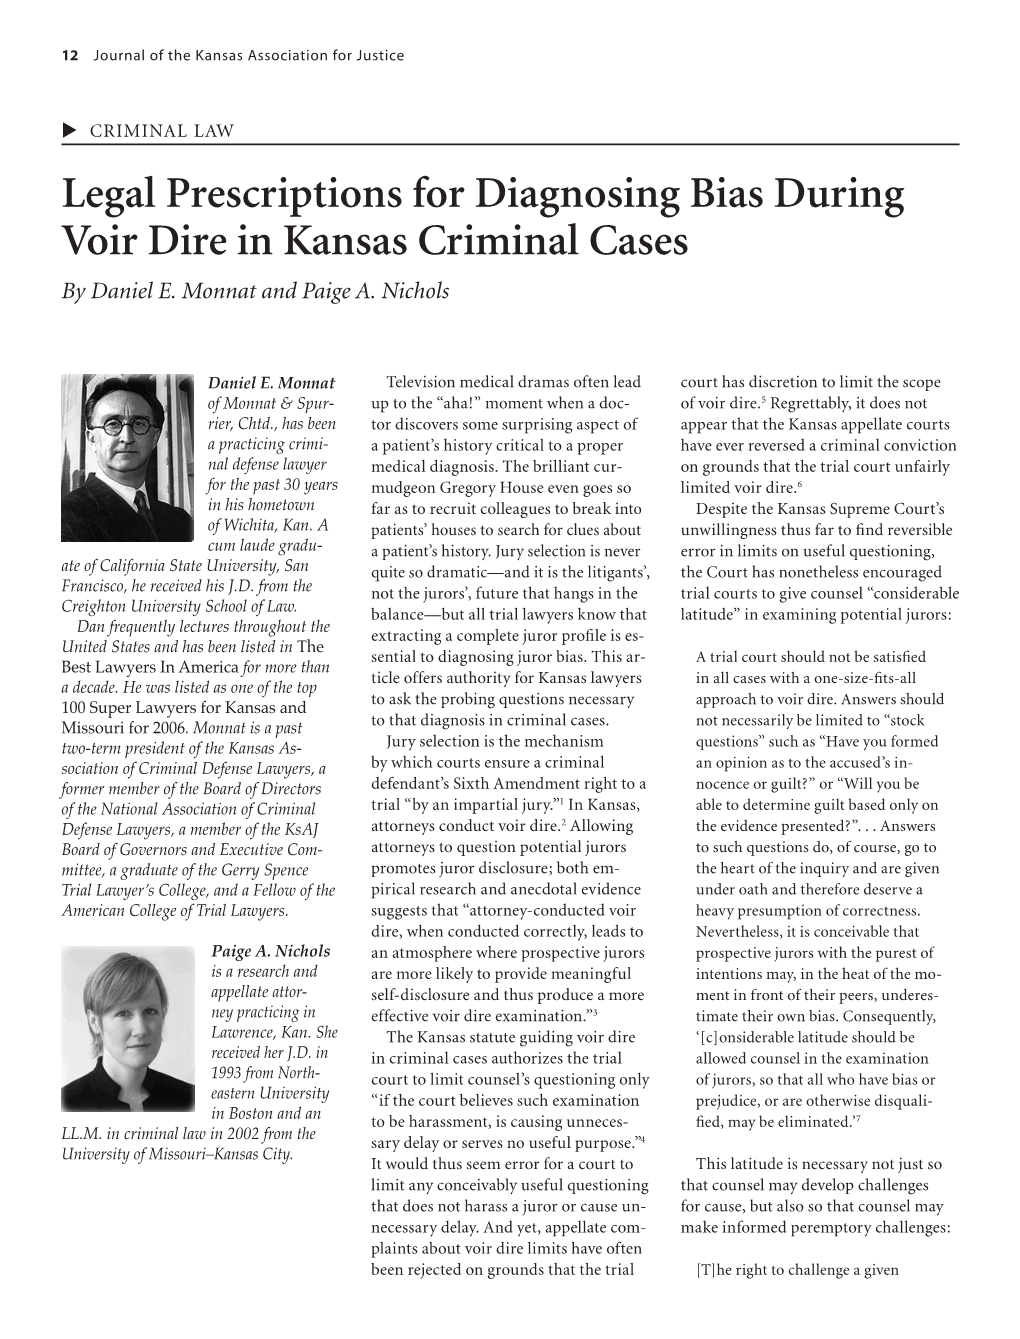 Legal Prescriptions for Diagnosing Bias During Voir Dire in Kansas Criminal Cases by Daniel E